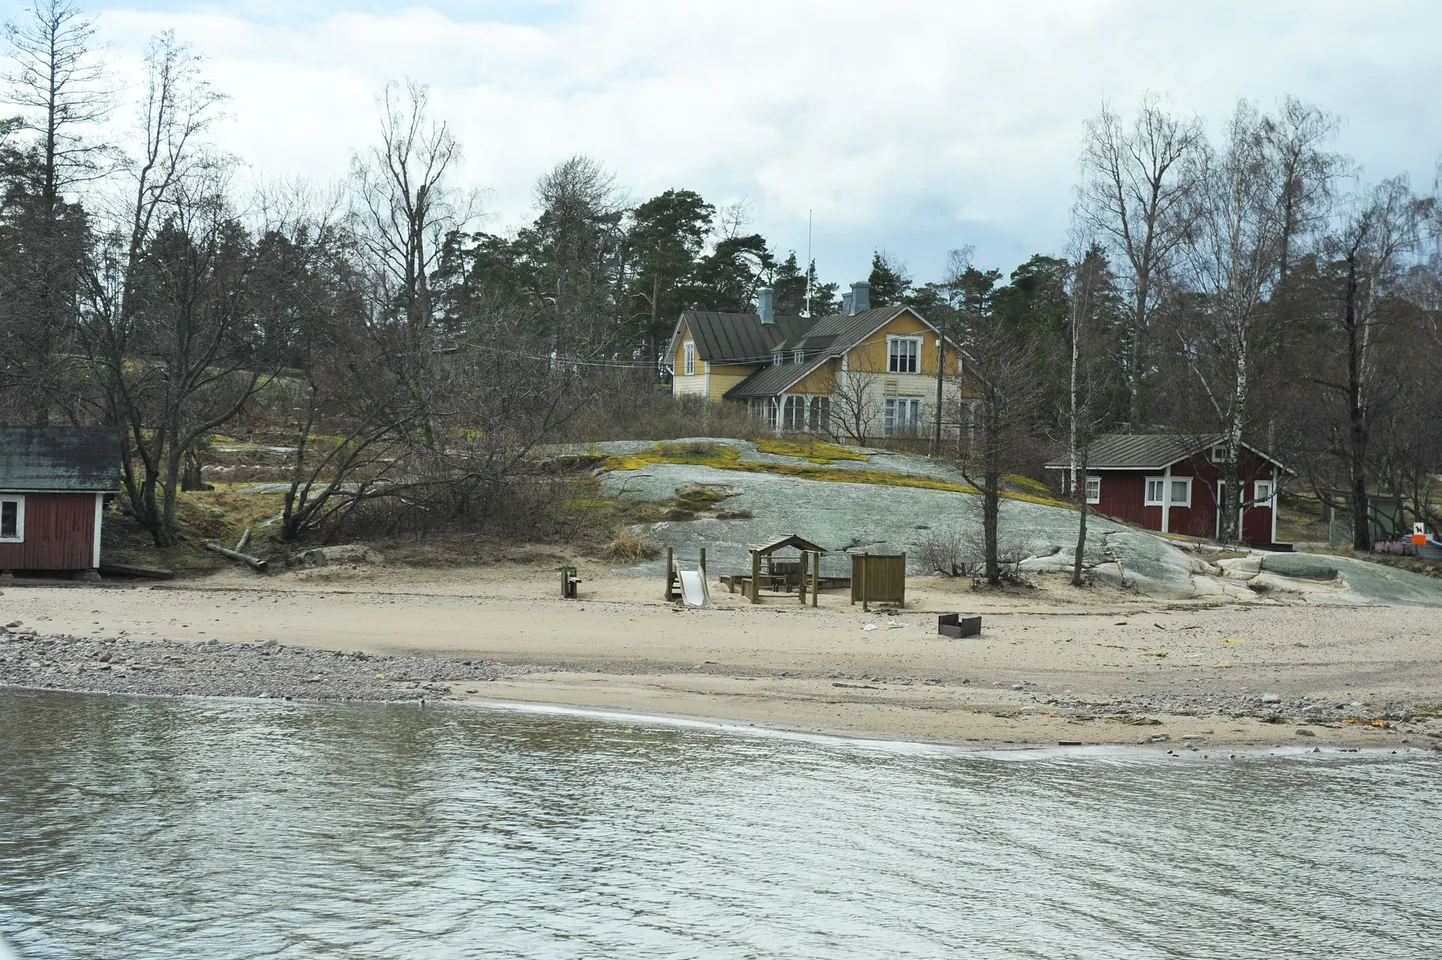 Helsingi lähedal asuval Pihlajasaarel elas Tallinki laevalt merre hüpanud mees kolm nädalat, enne kui endast märku andis.